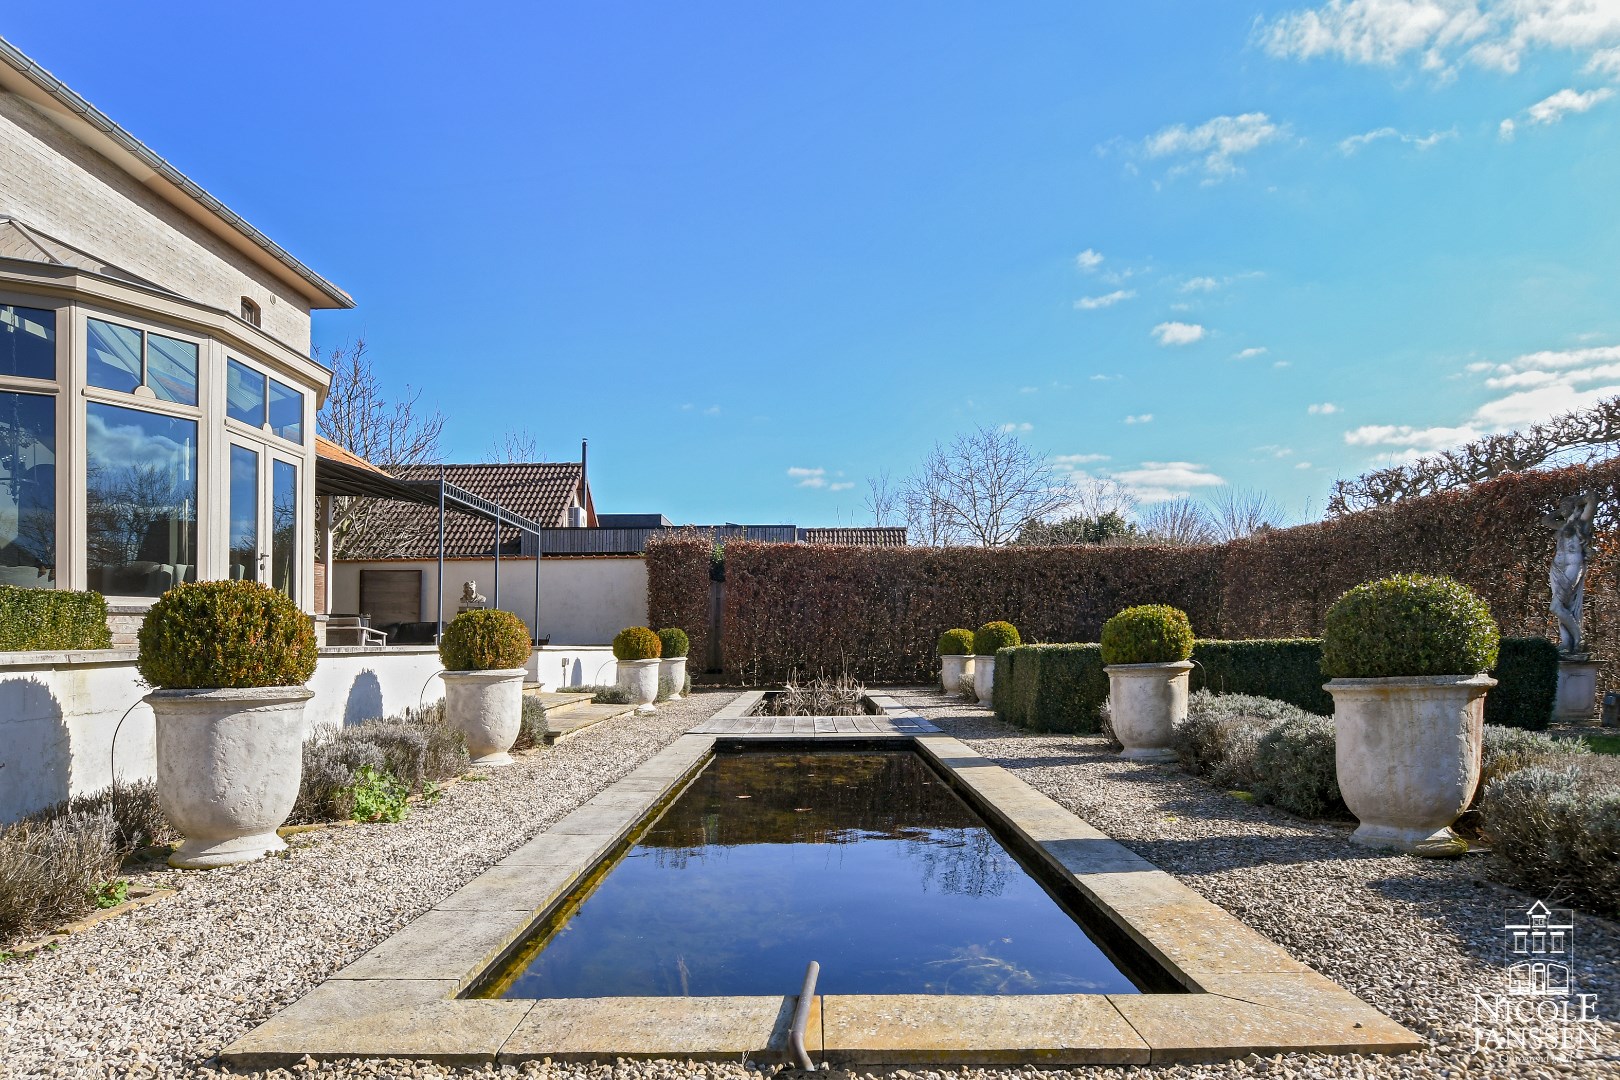 Kwalitatief afgewerkte en instapklare villa met mooi aangelegde tuin nabij het centrum 